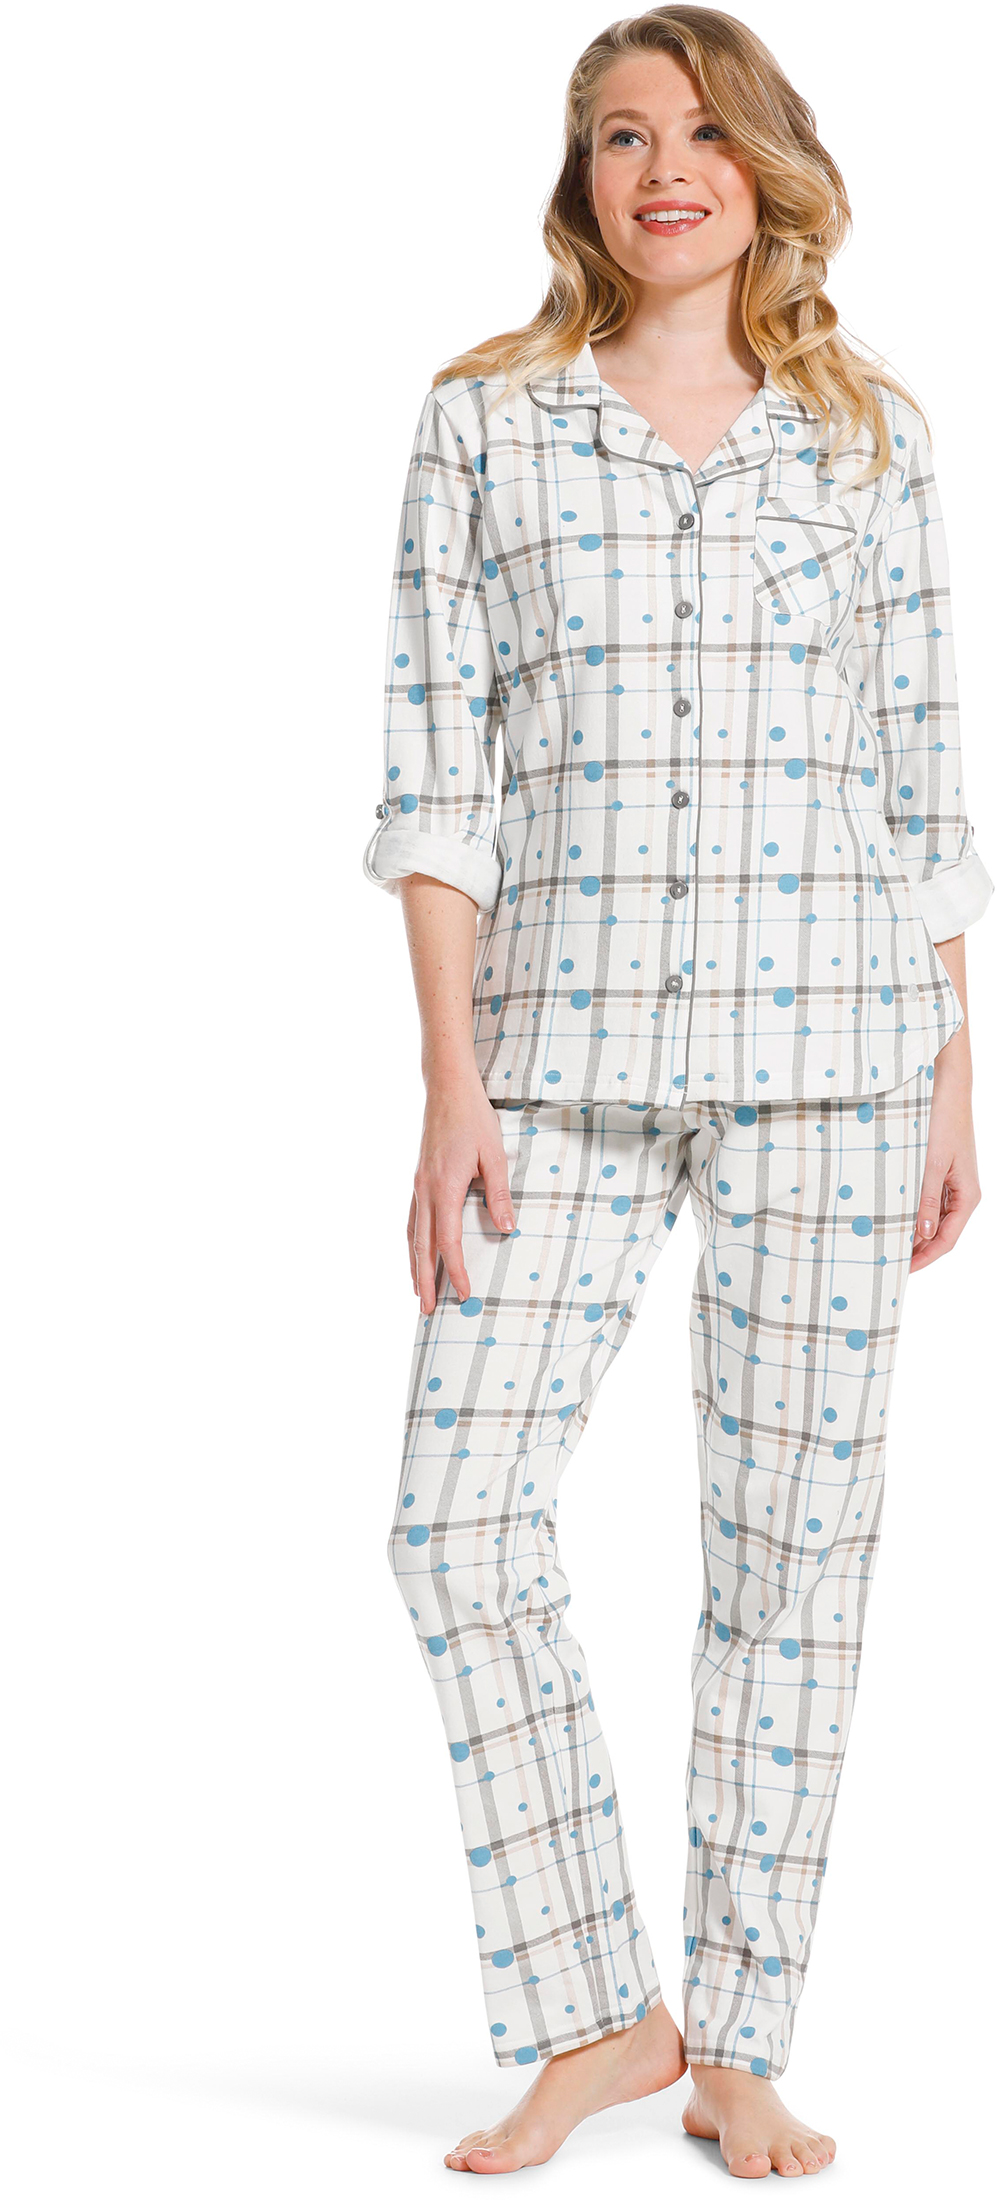 Pastunette dames doorknoop pyjama 20222-142-6-44